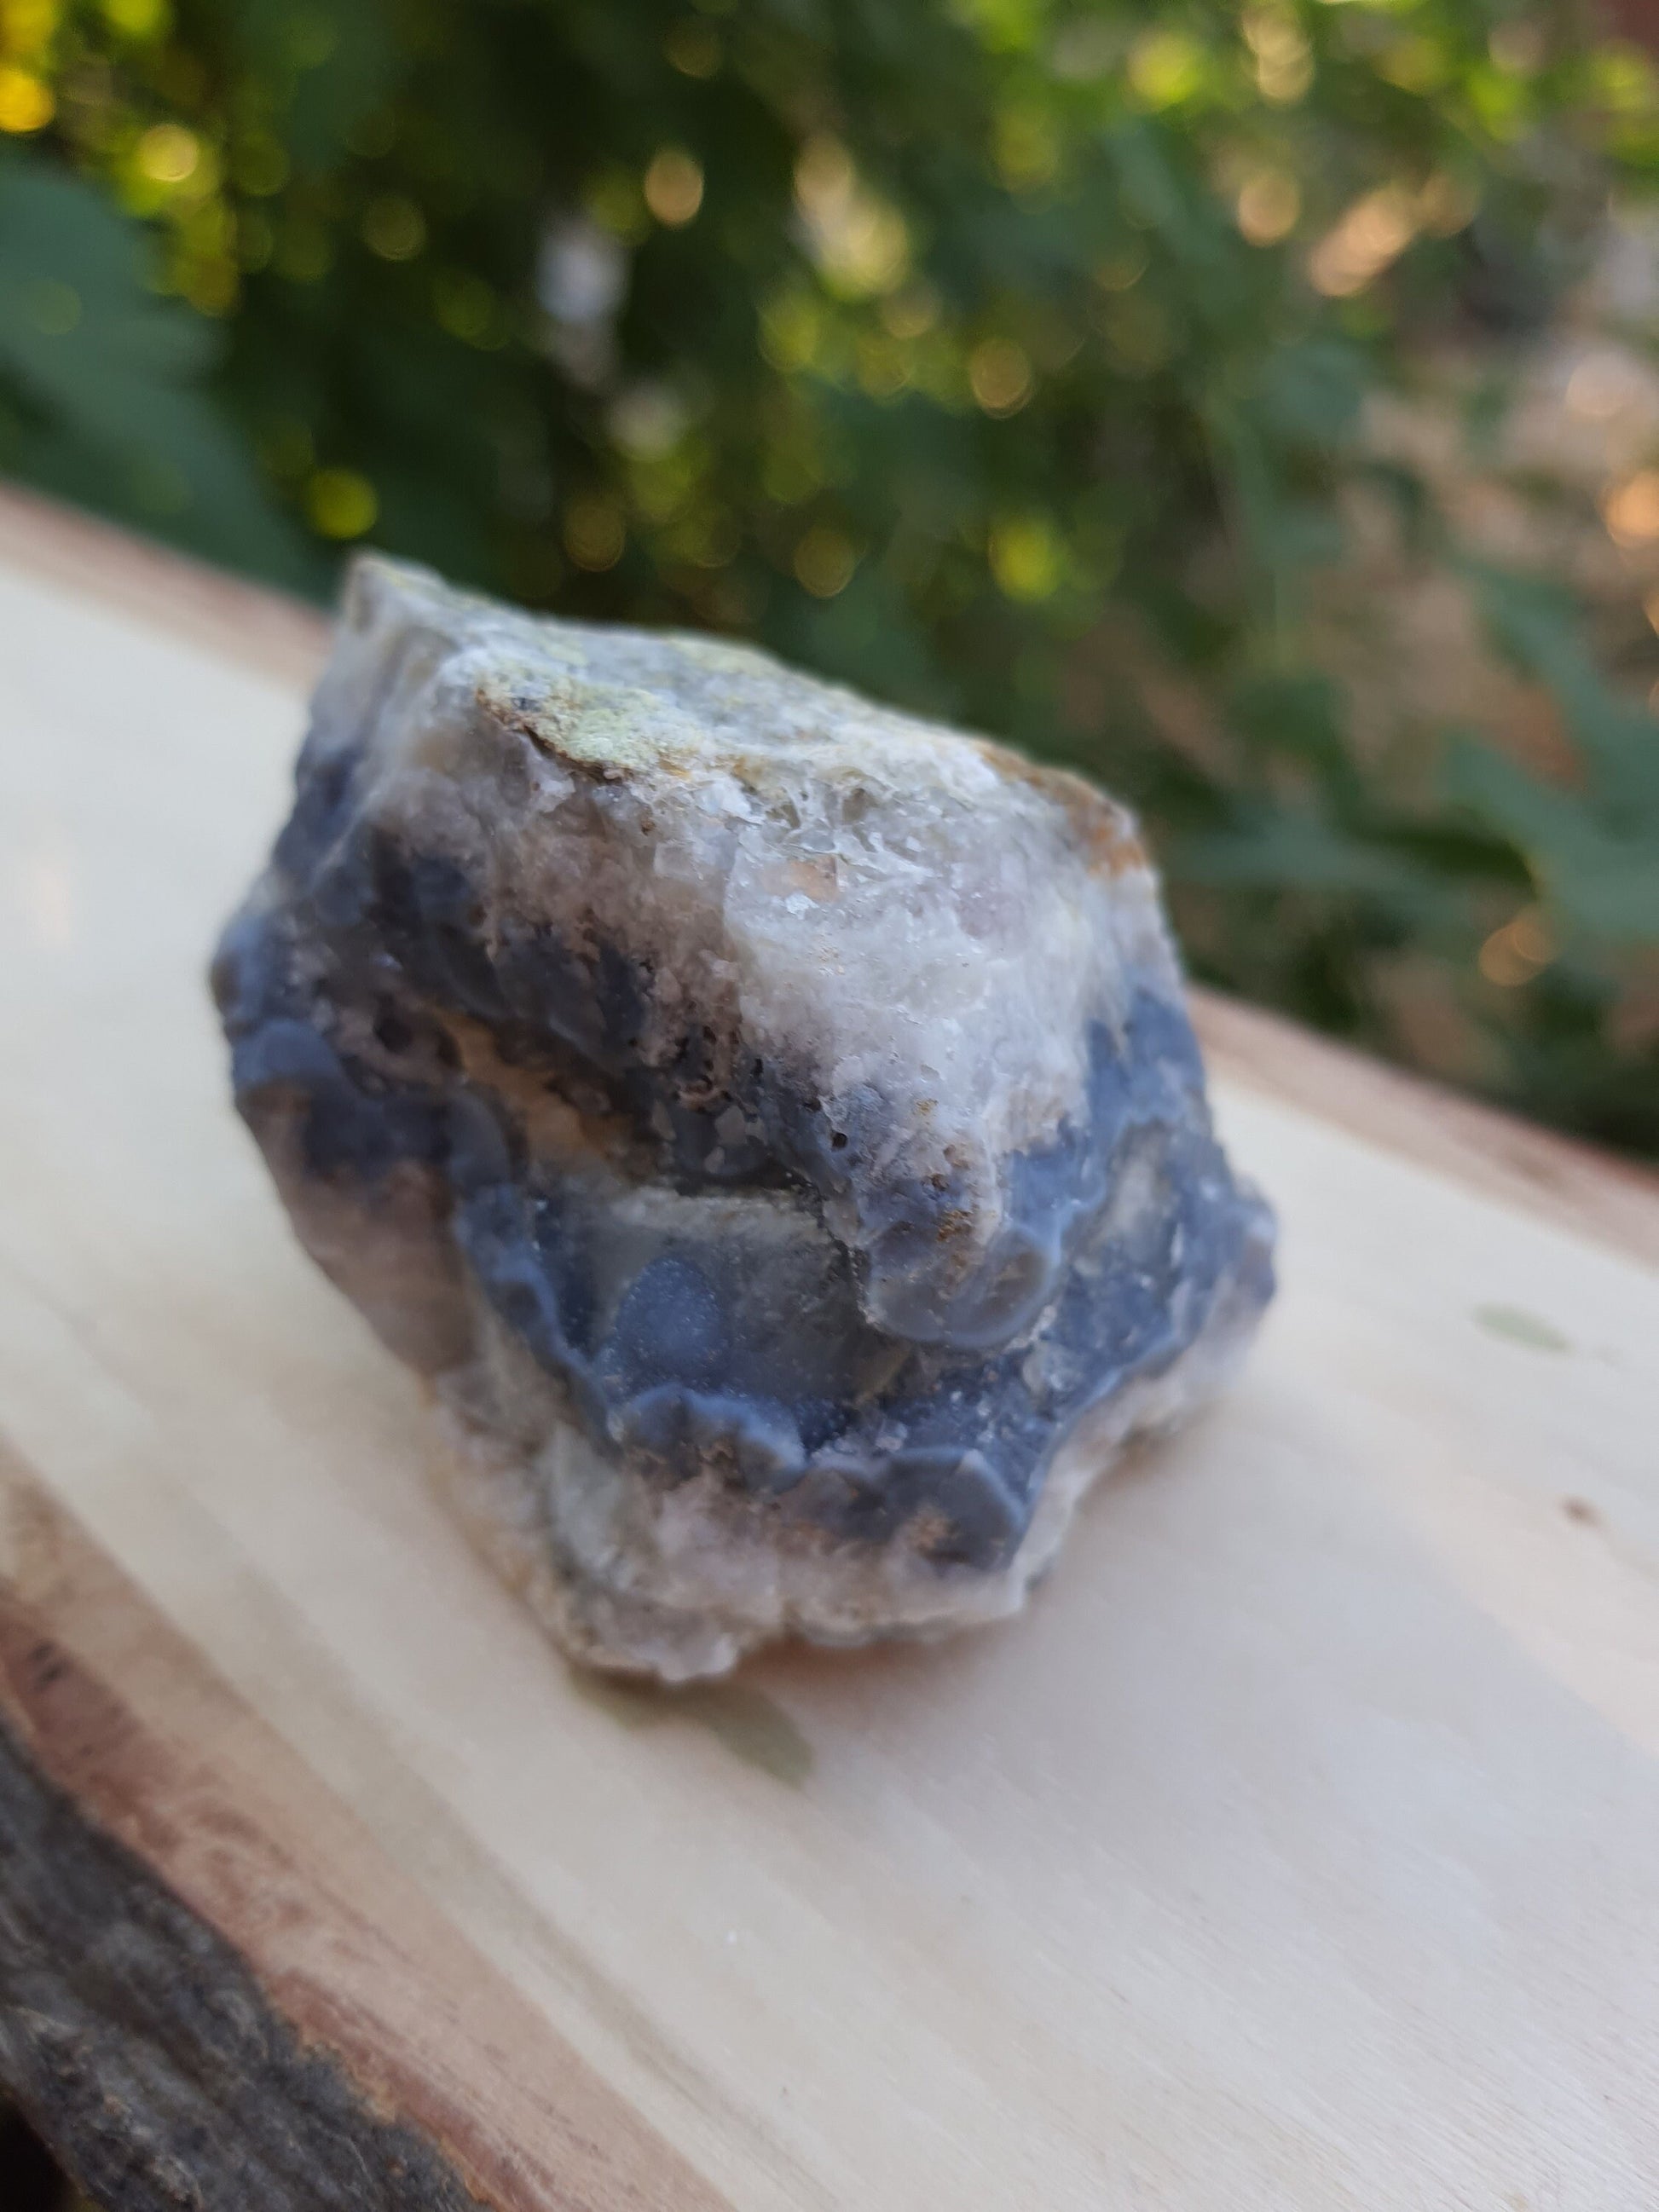 Blue Lace Agate Cluster, 91g Druzy Blue Lace Agate Geode, Sparkly blue Lace Agate, Blue Agate Crystal, Blue Lace Agate, Raw Crystal Cluster